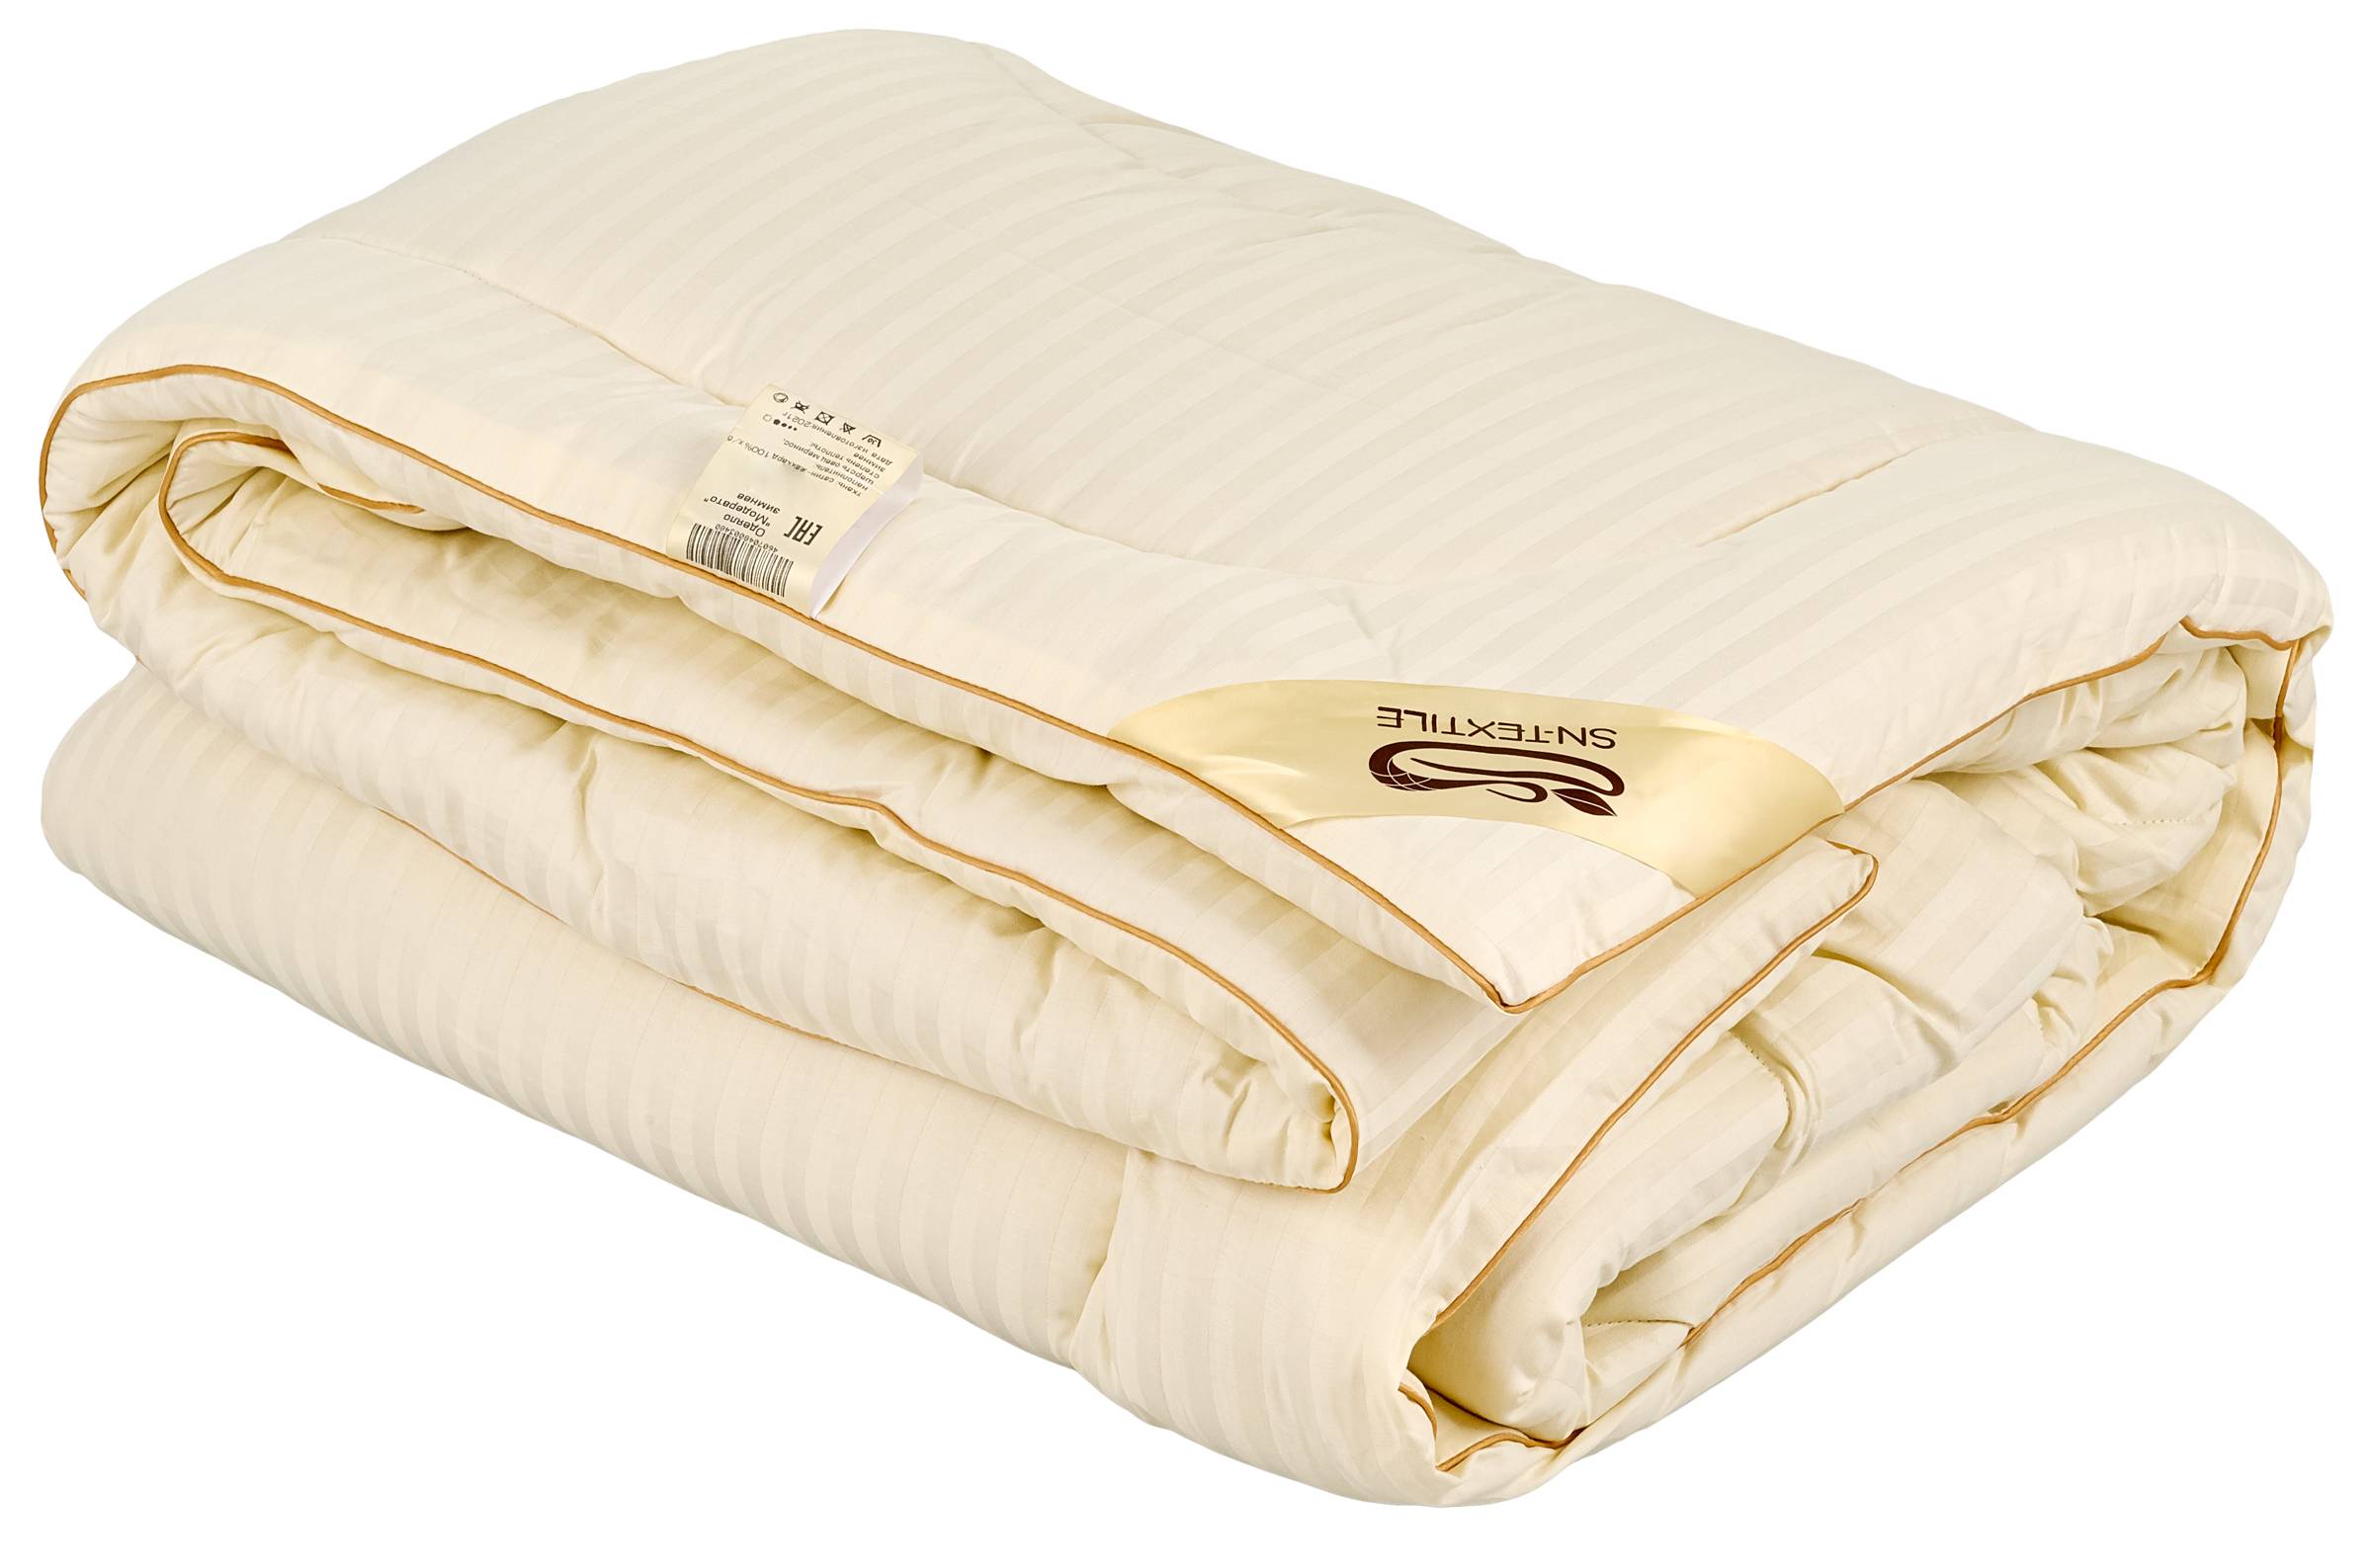 Одеяло Sn-Textile из шерсти мериноса 2 спальное 172х205 теплое зимнее